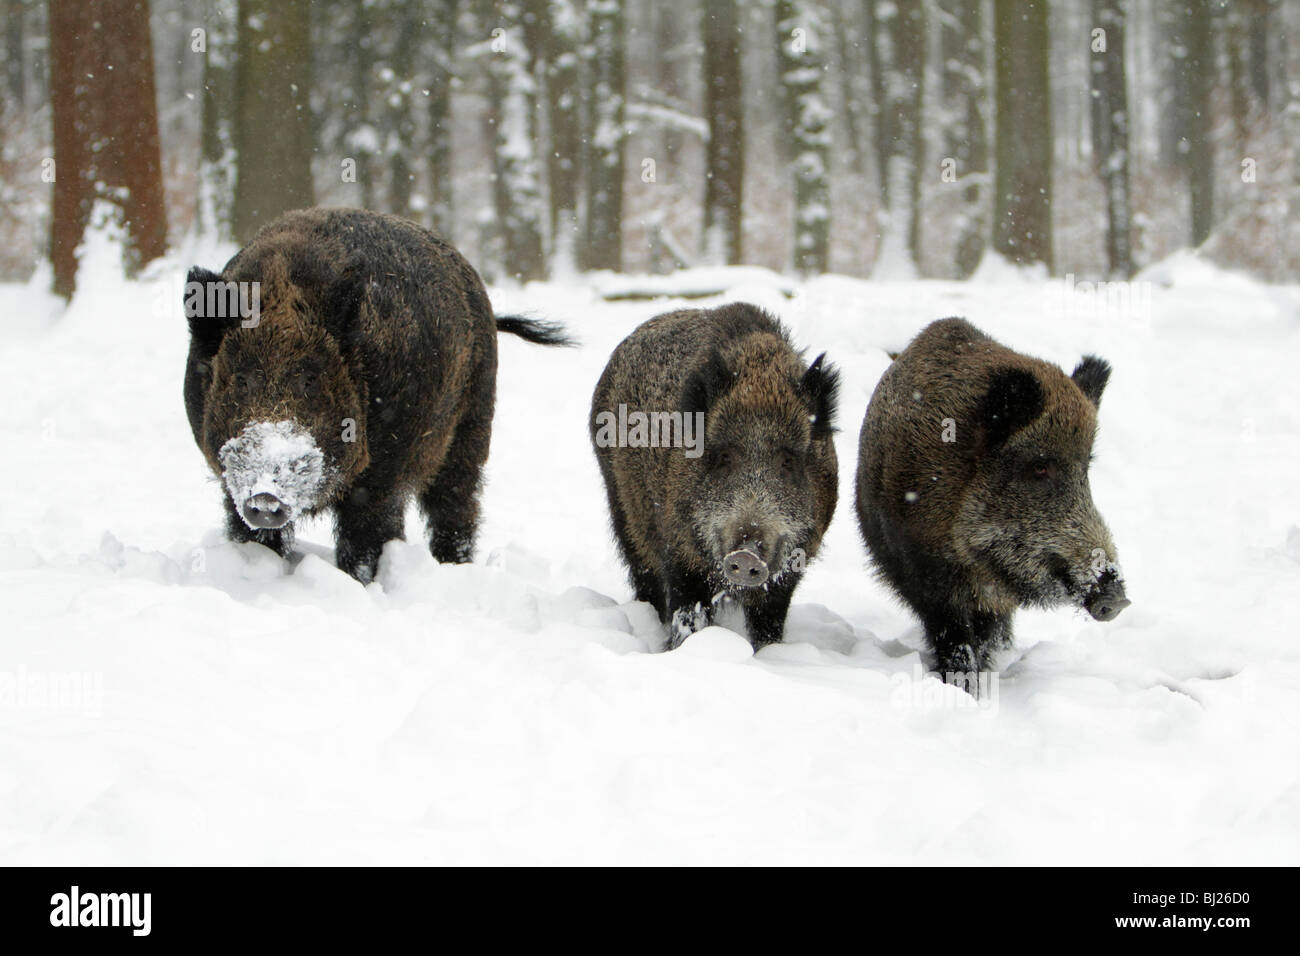 El jabalí, Sus scrofa, el jabalí y dos cerdas en bosques cubiertos de nieve, Alemania Foto de stock